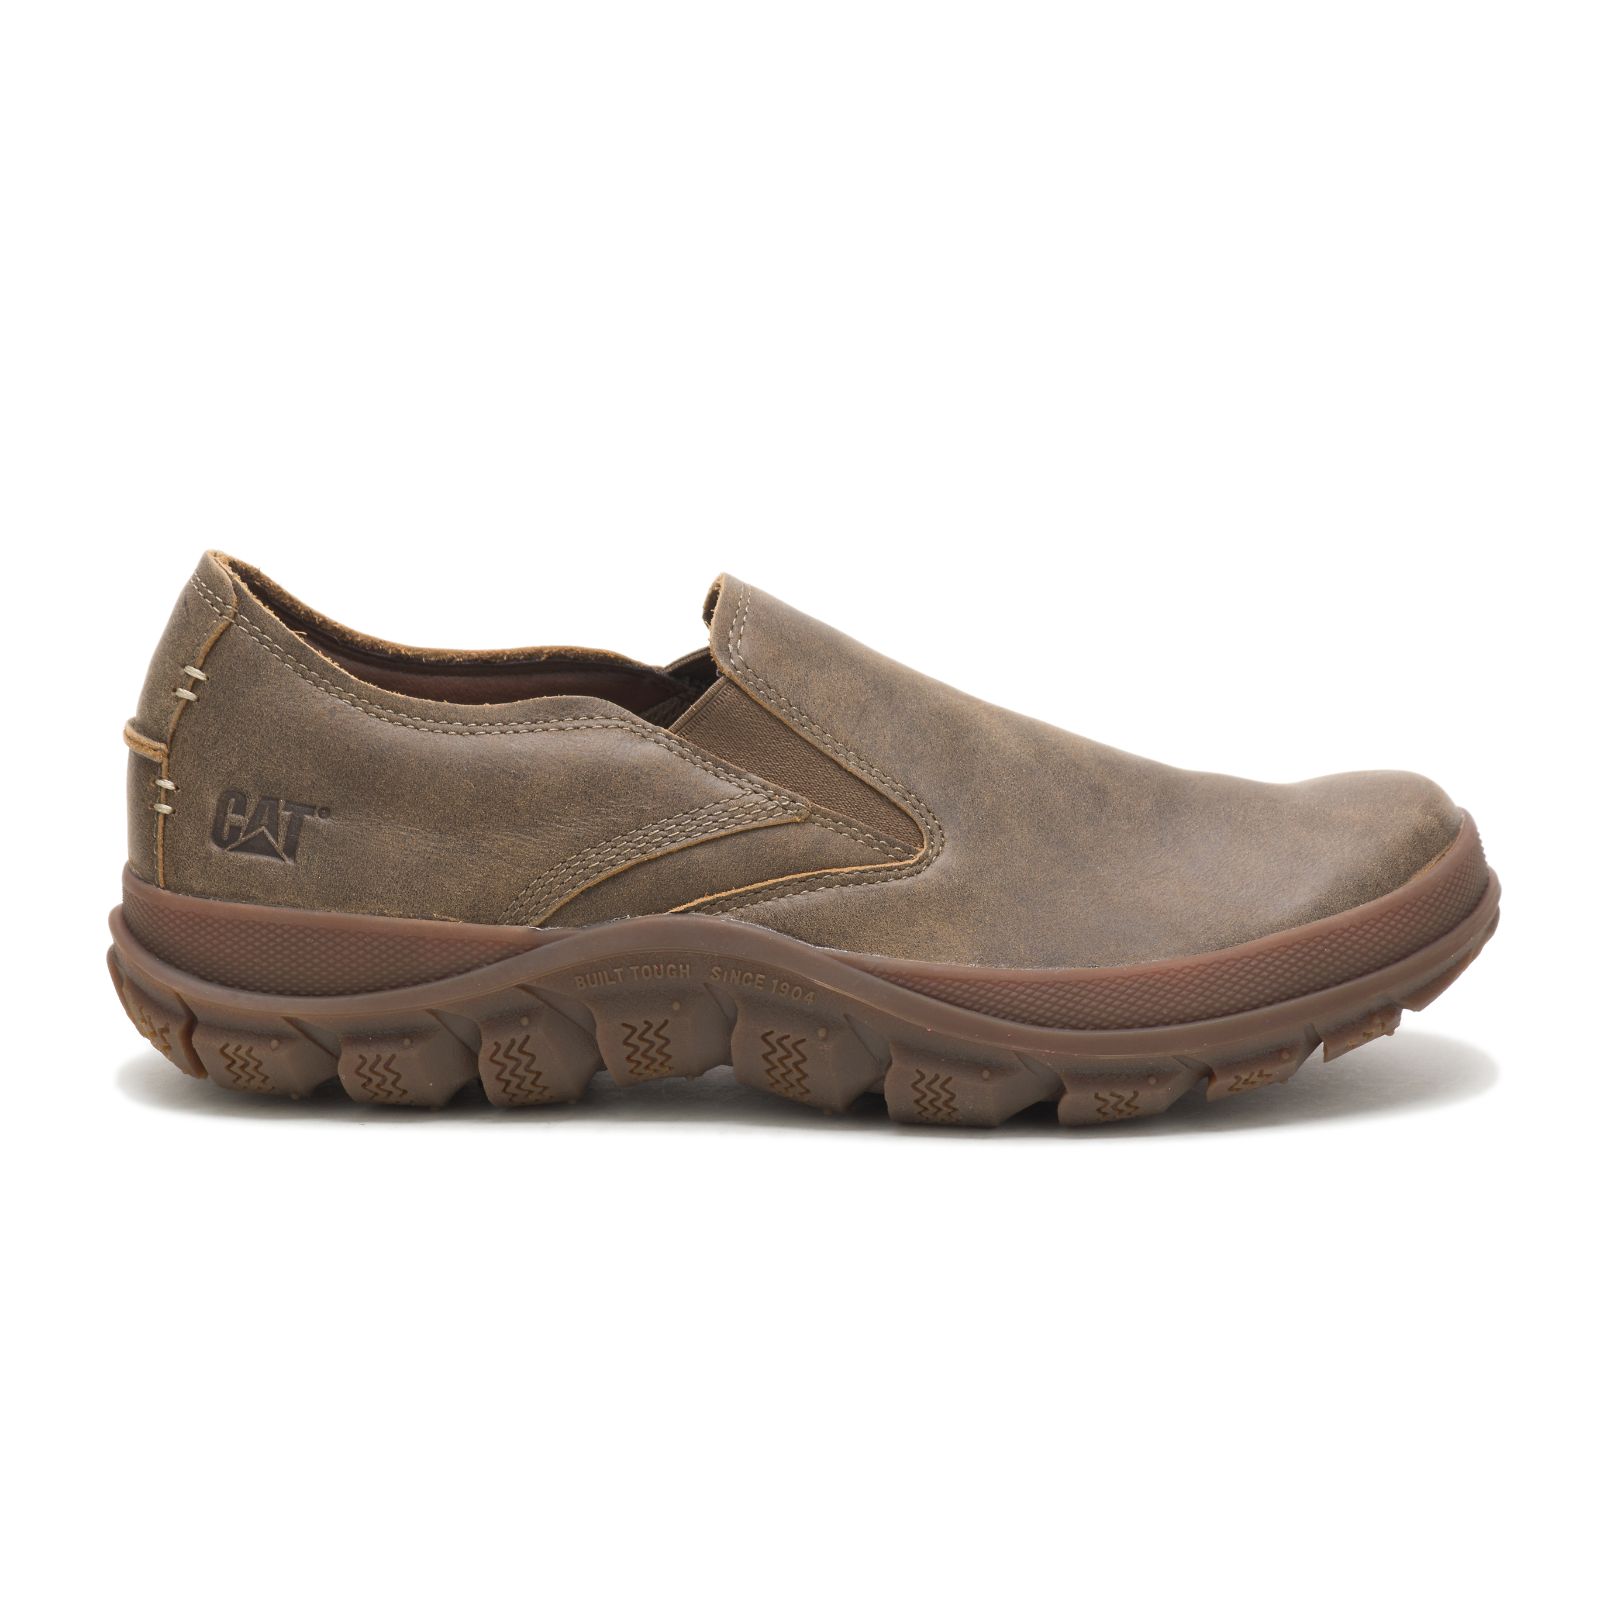 Caterpillar Shoes Online - Caterpillar Fused Mens Sneakers Brown (428561-SRK)